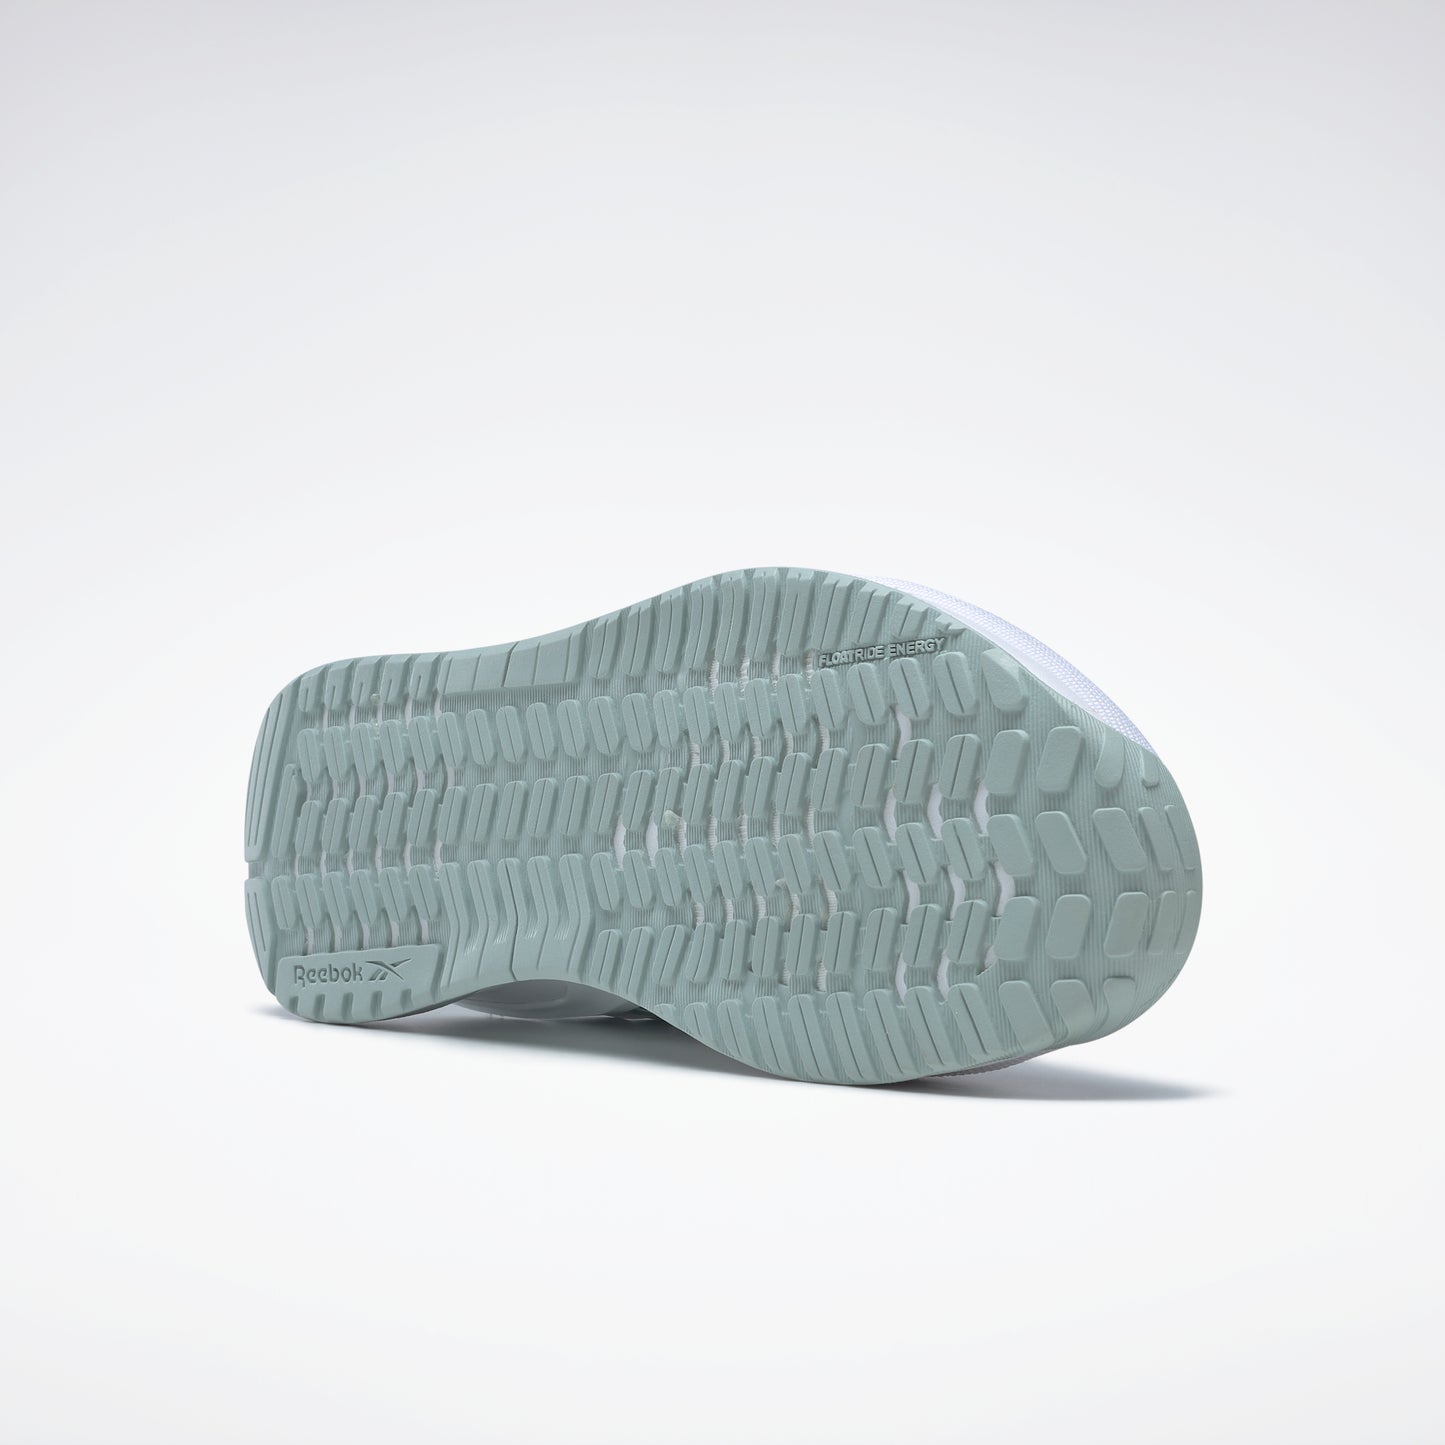 Reebok Footwear Women Nano X2 Shoes Ftwwht/Seagry/Hinmin